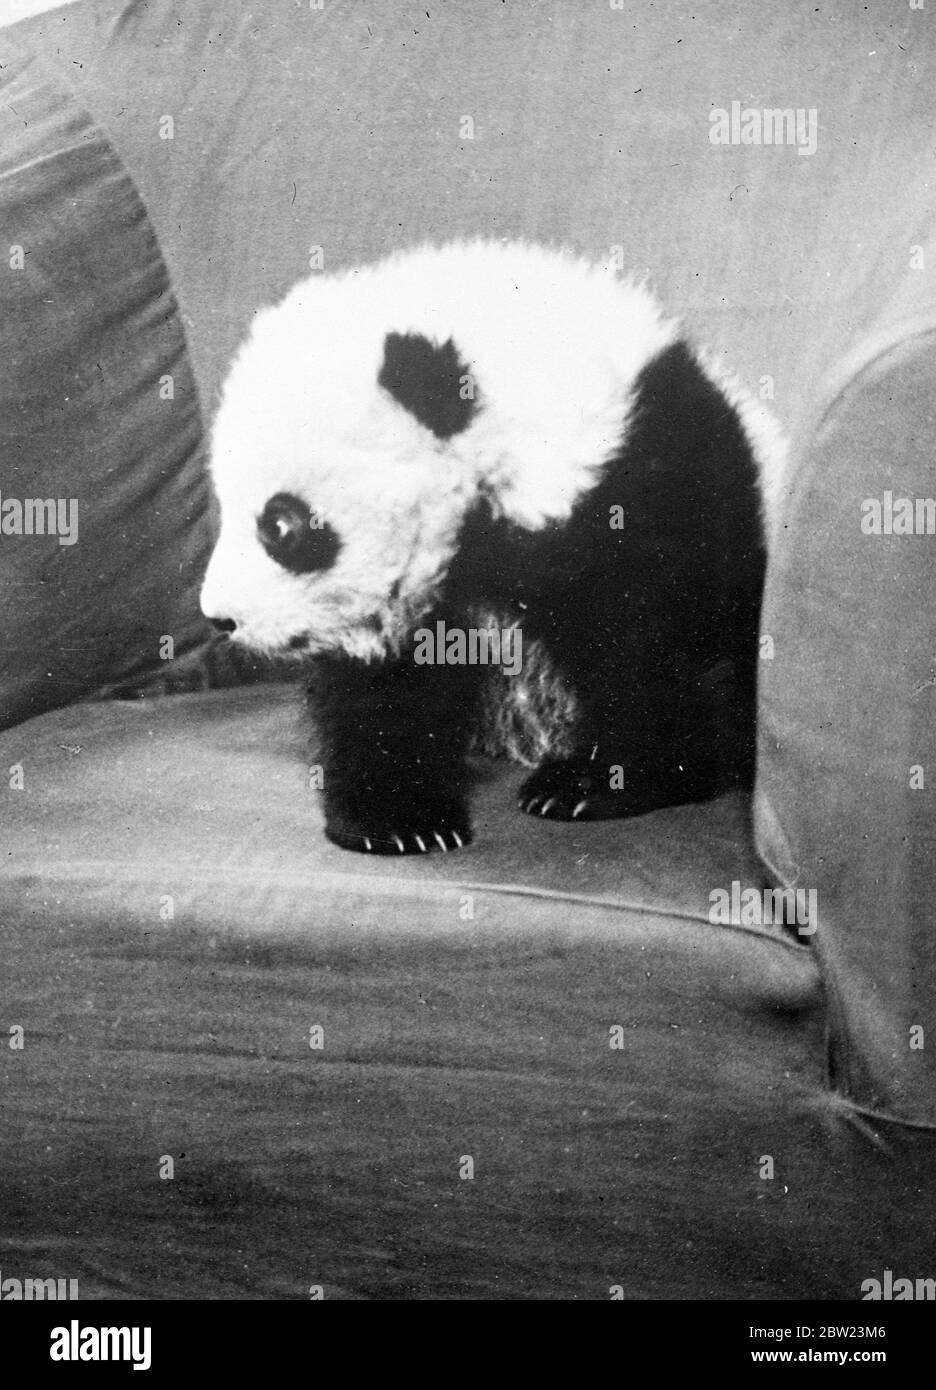 Mme Ruth Harkness Explorer, veuve d'un explorateur, a réussi à capturer vivant un bébé Panda géant, l'un des animaux les plus rares au monde. 15 février 1938 Banque D'Images